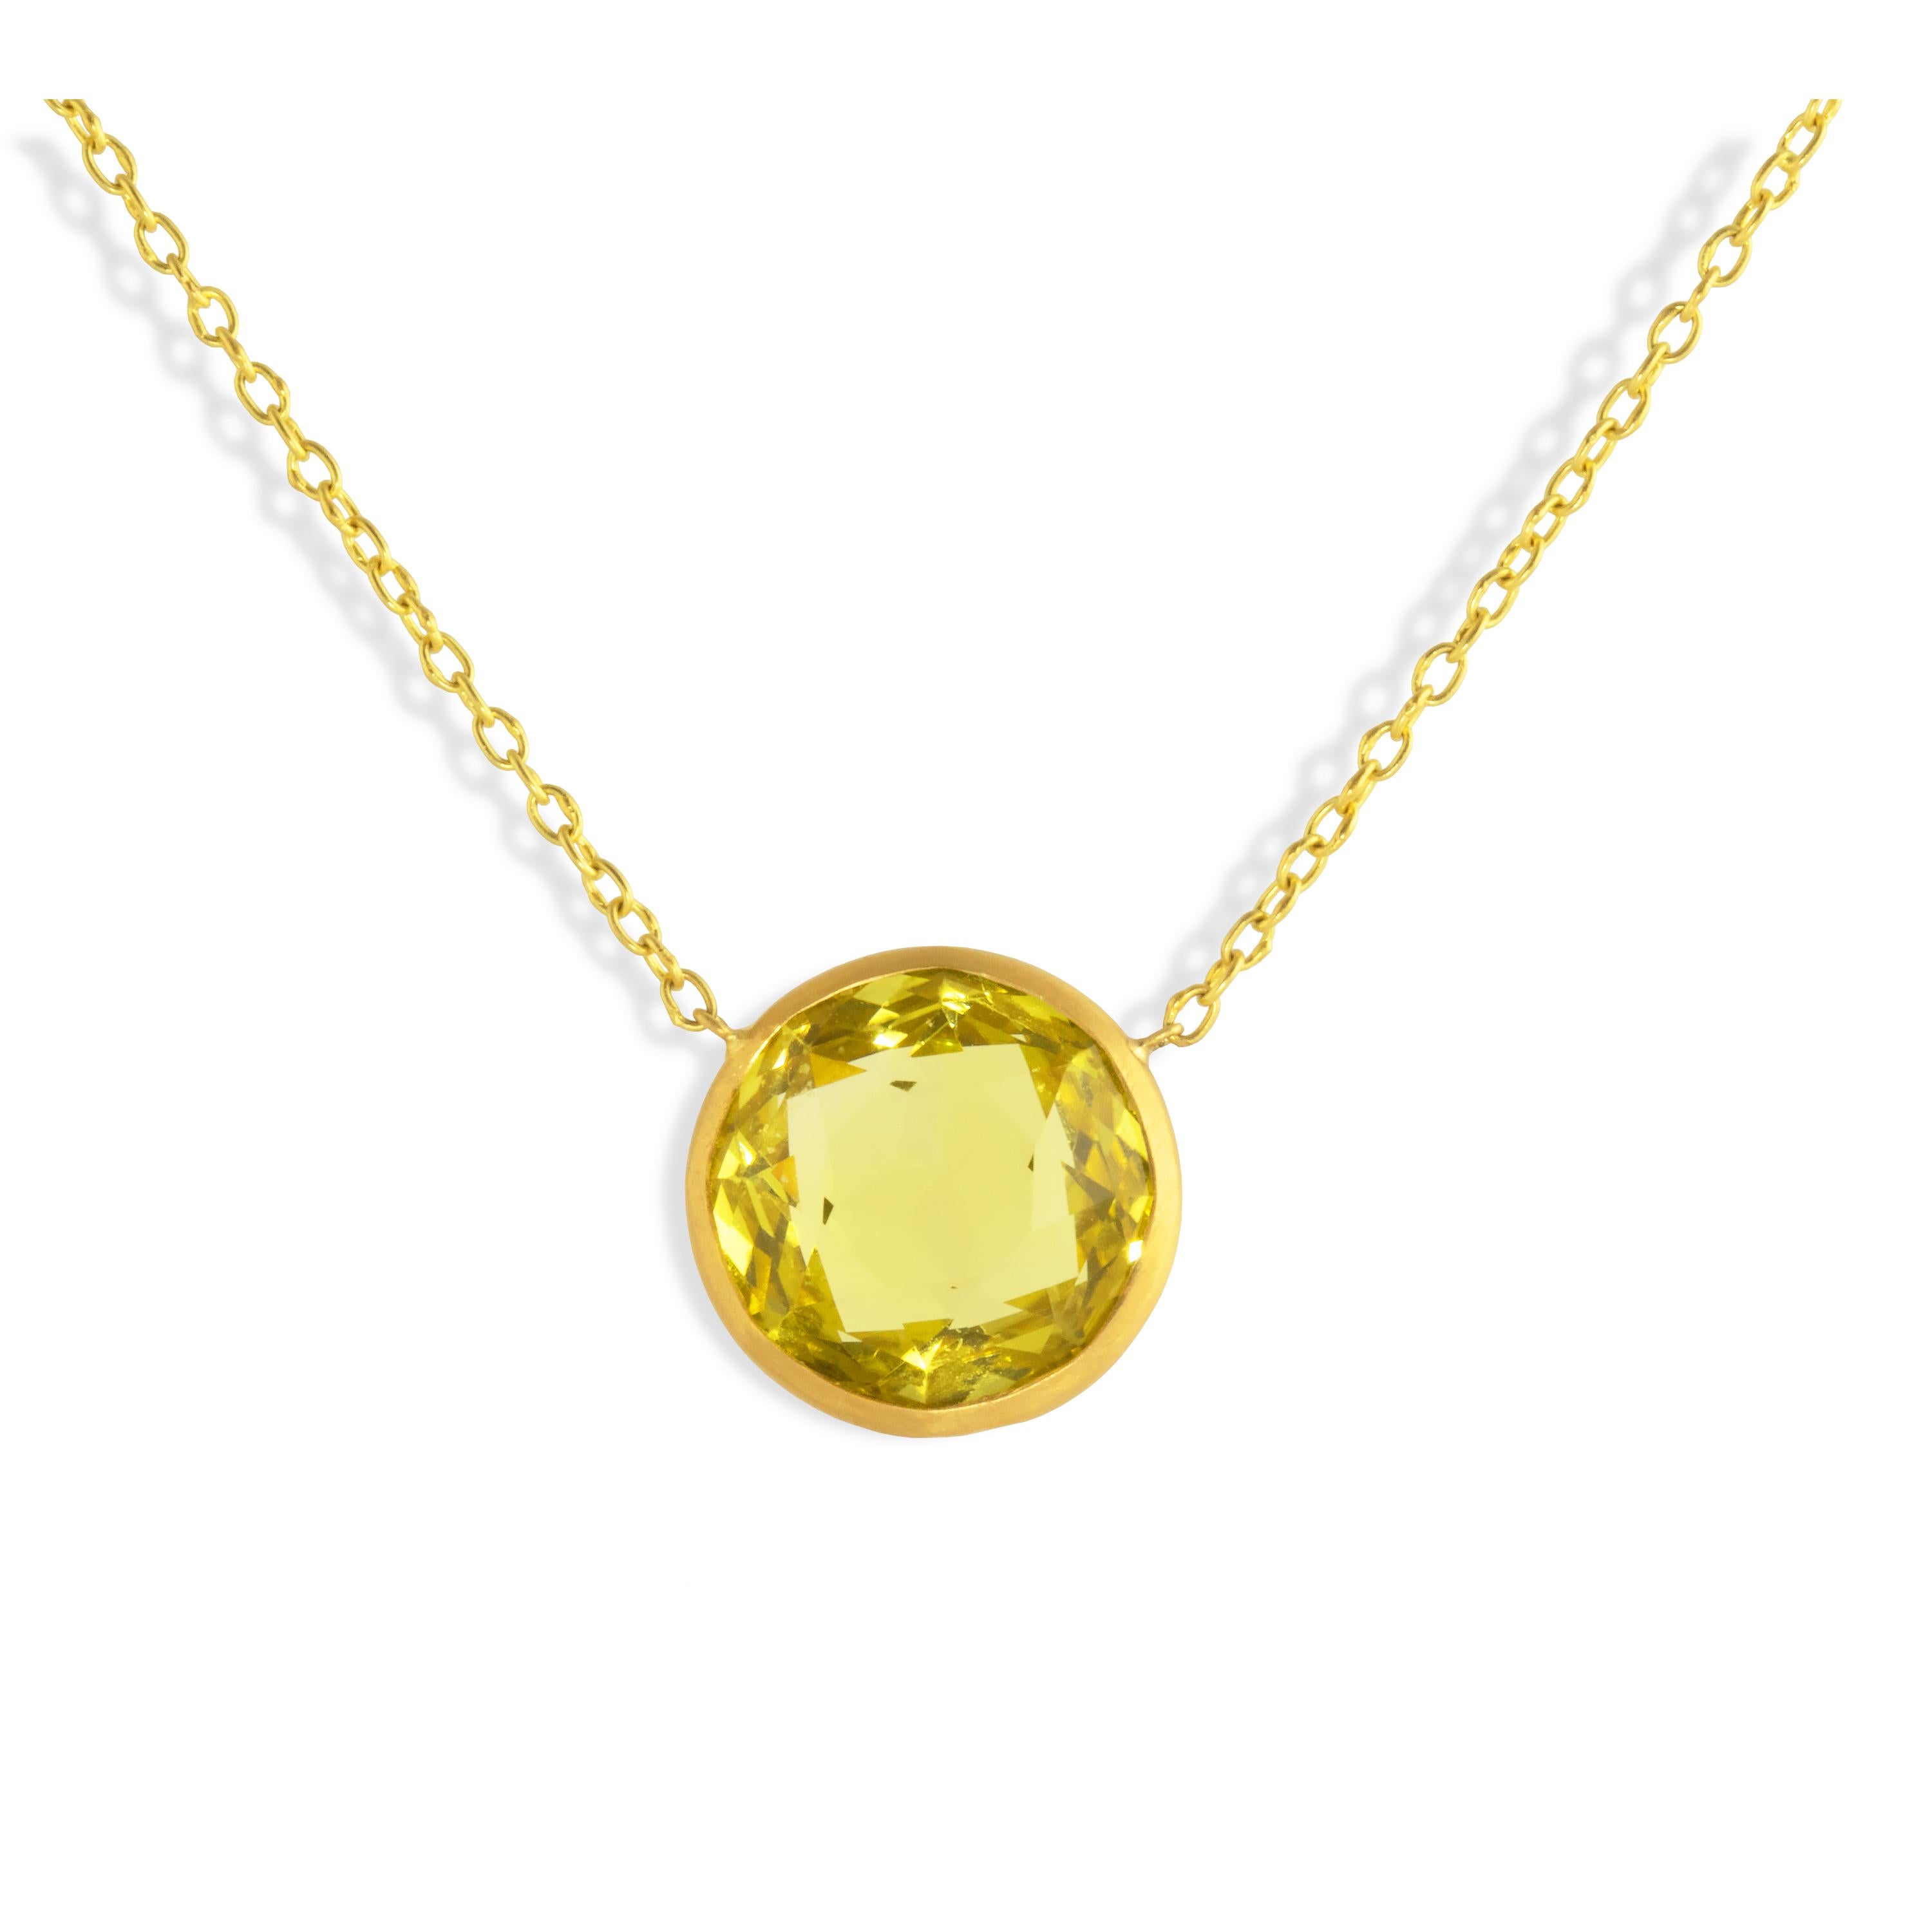 Mit einem 10 Karat Zitronenquarz beidseitig facettiert Halskette in 22k Gold gefasst und auf einem 22k Goldkette vorgestellt.  Hakenverschluss.  Perfekt allein oder in Kombination mit anderen Halsketten.

Die leuchtend gelbe Farbe des